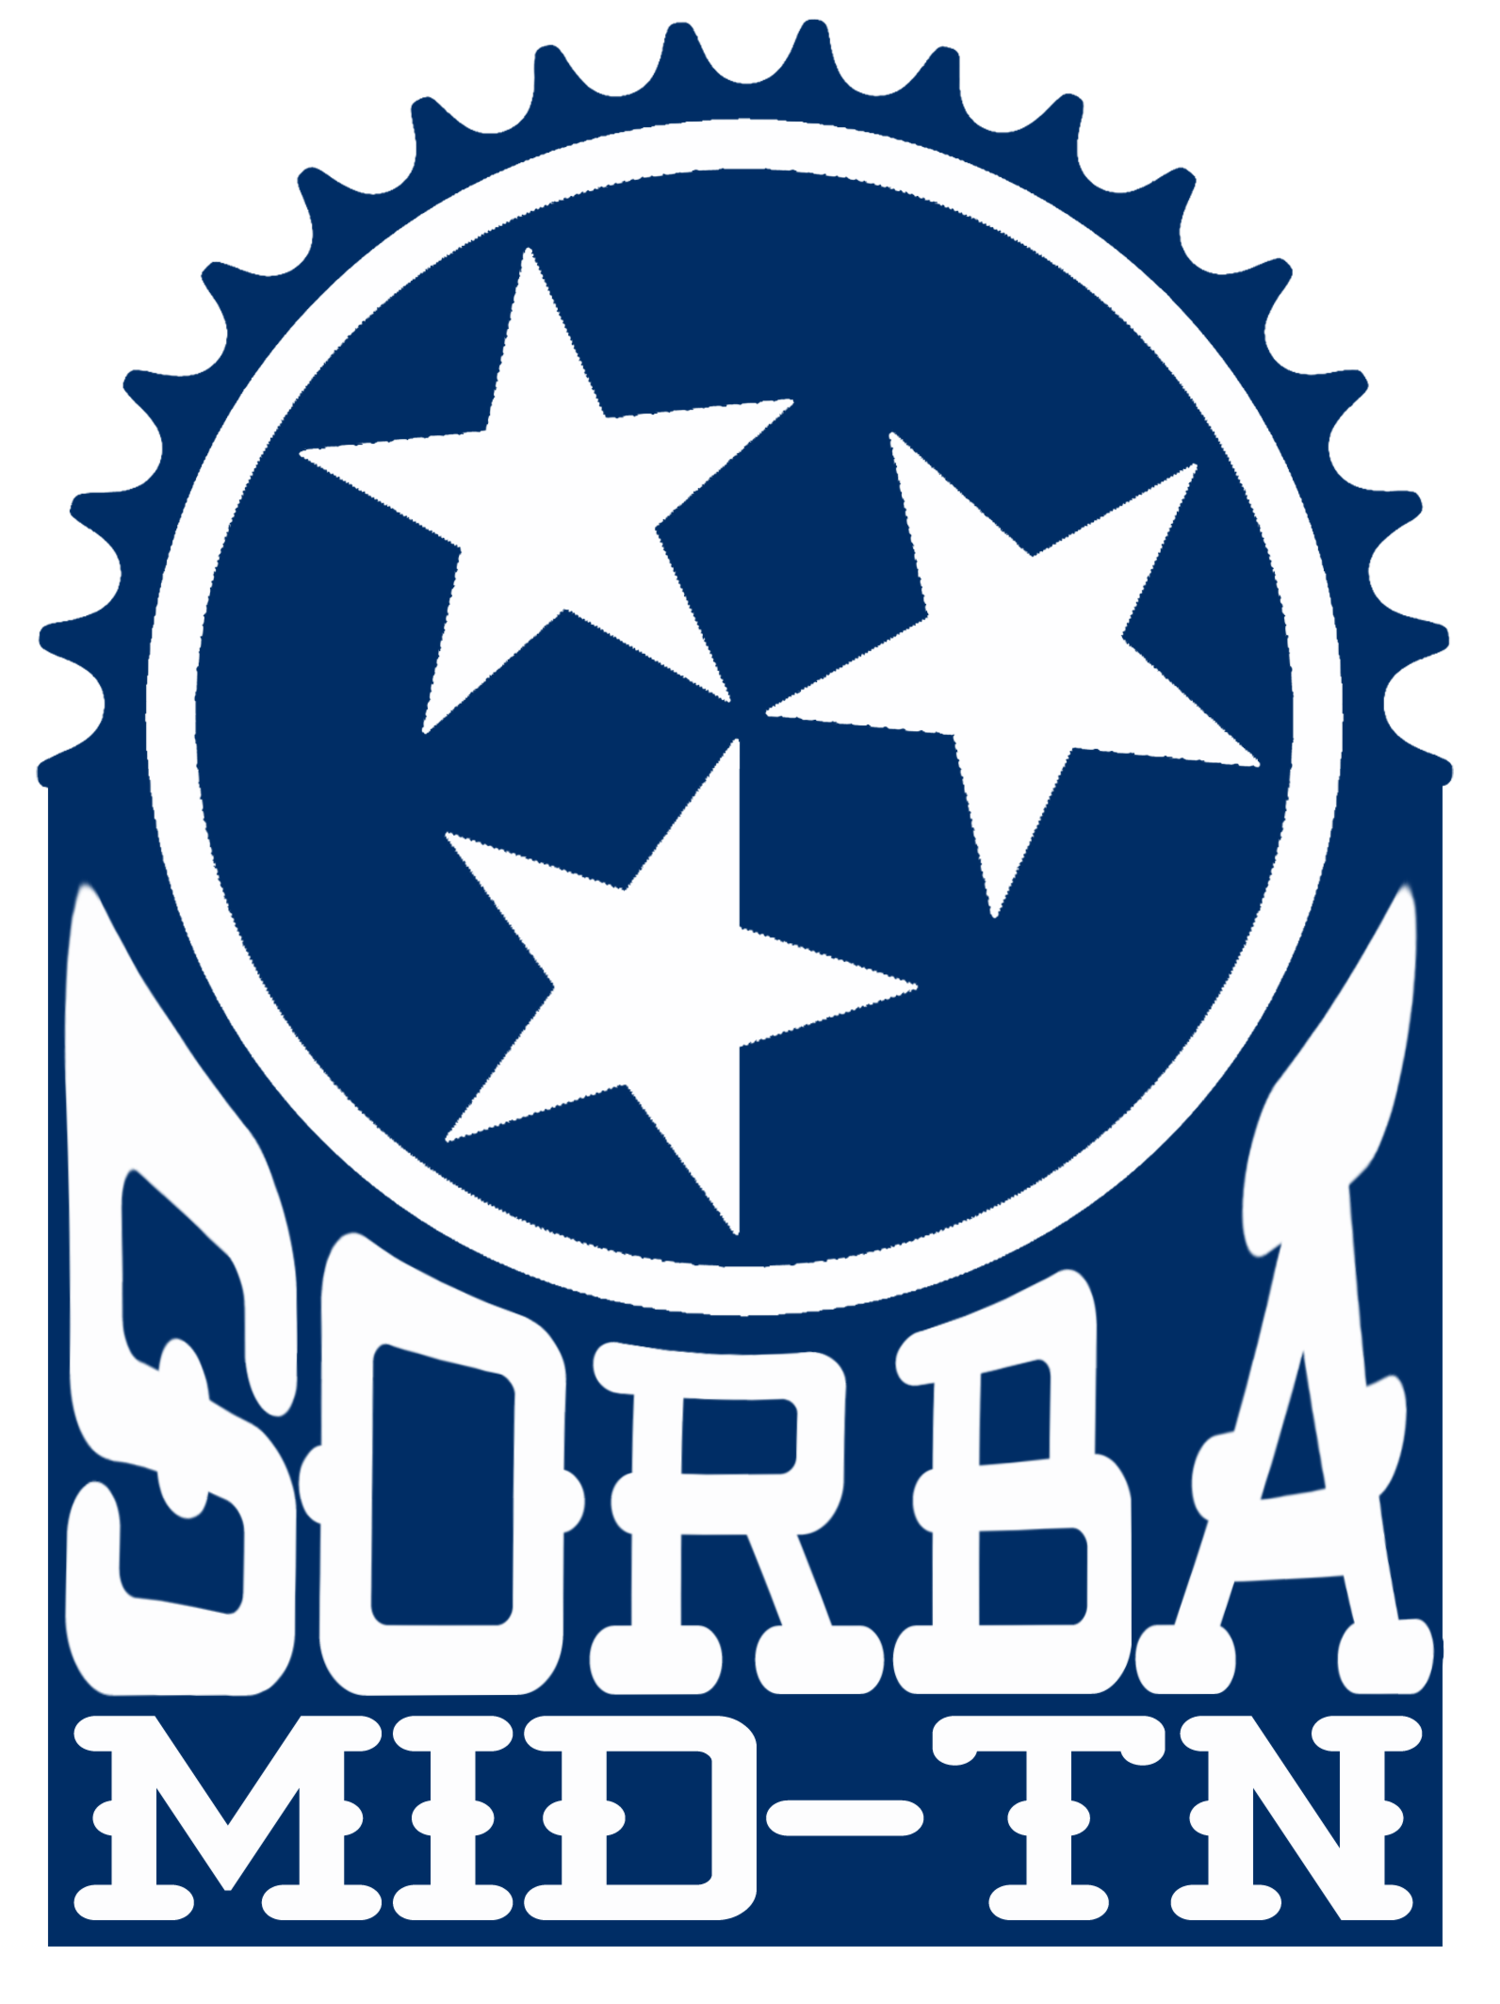 SORBA Mid-TN